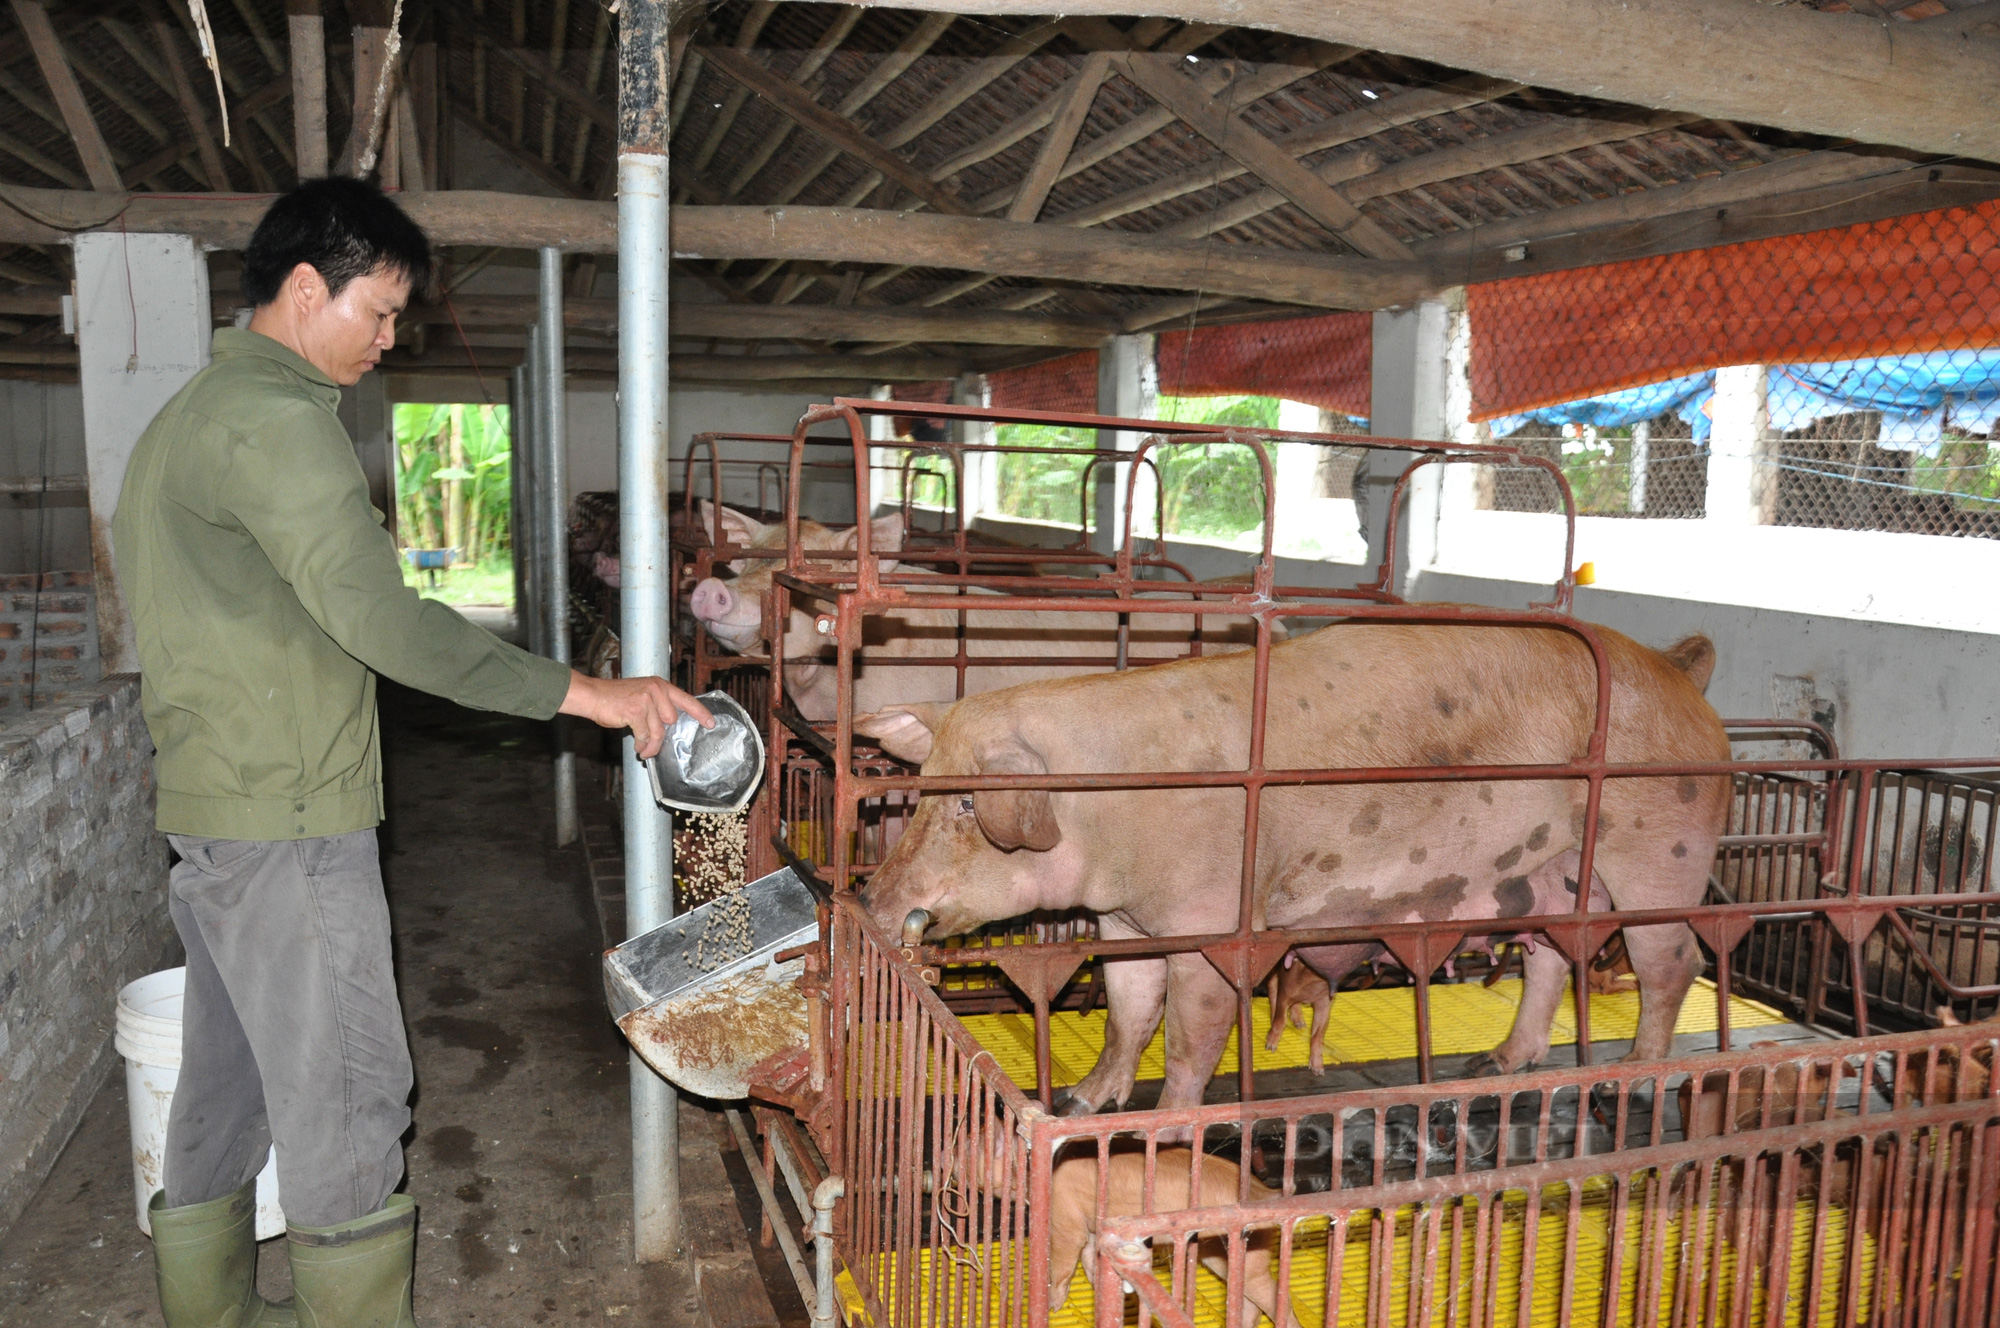 An toàn sinh học, giải pháp đơn giản, dễ áp dụng giúp nông hộ chăn nuôi lợn an toàn giữa đại dịch - Ảnh 4.